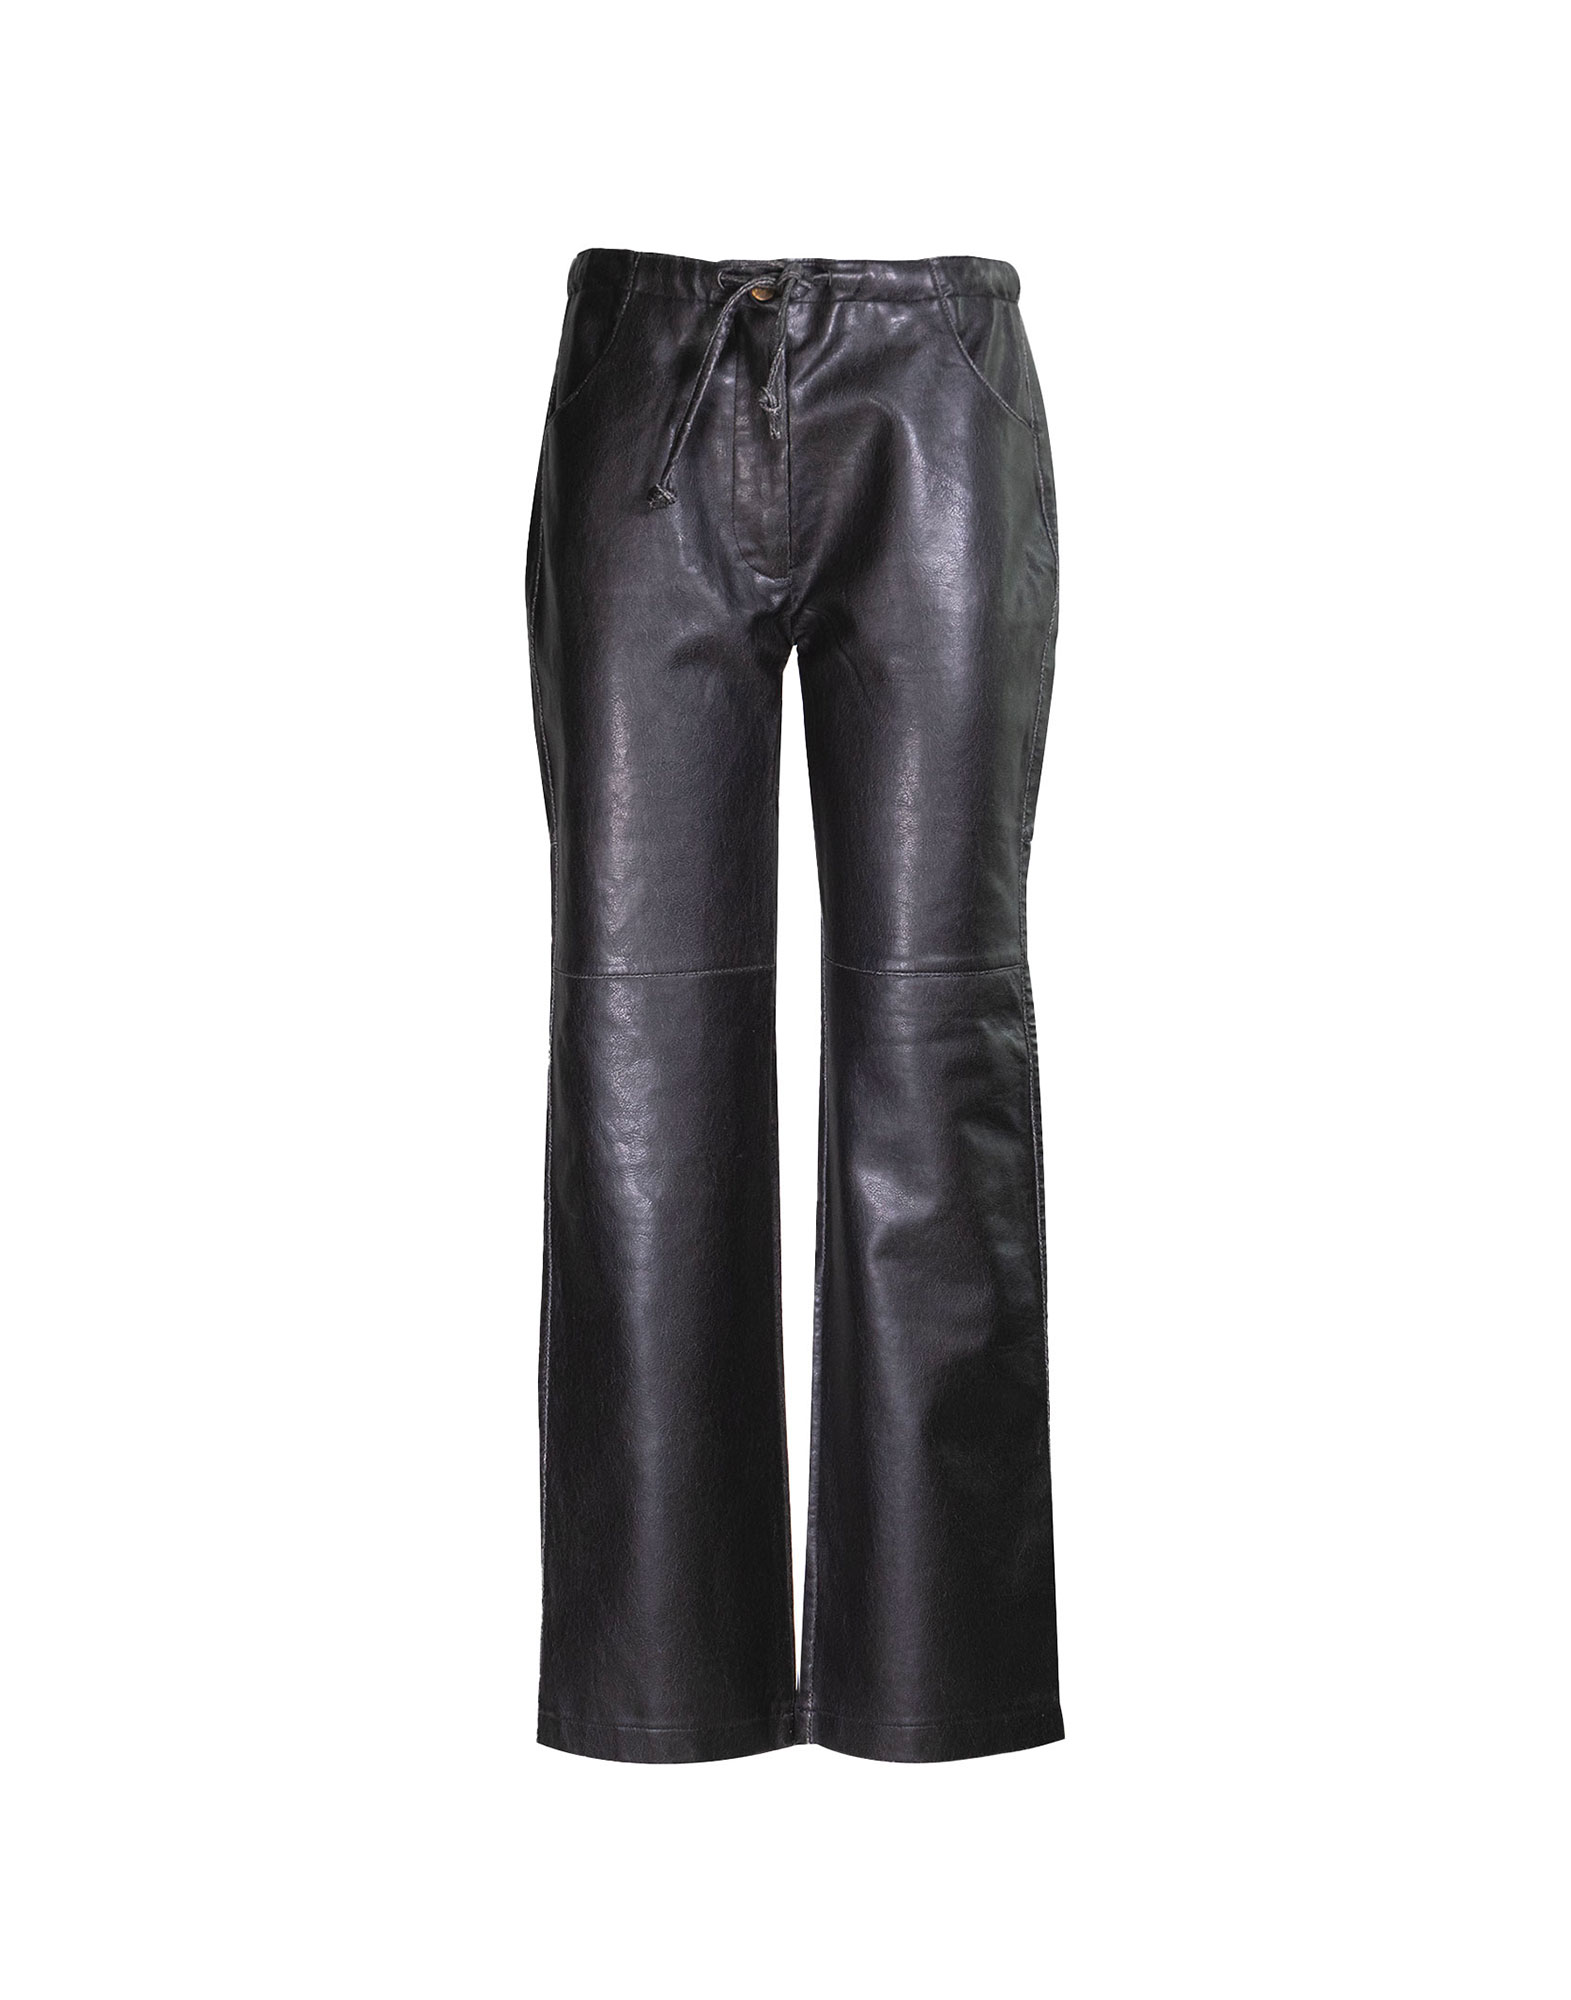 Just Cavalli - Pantaloni neri anni 2000